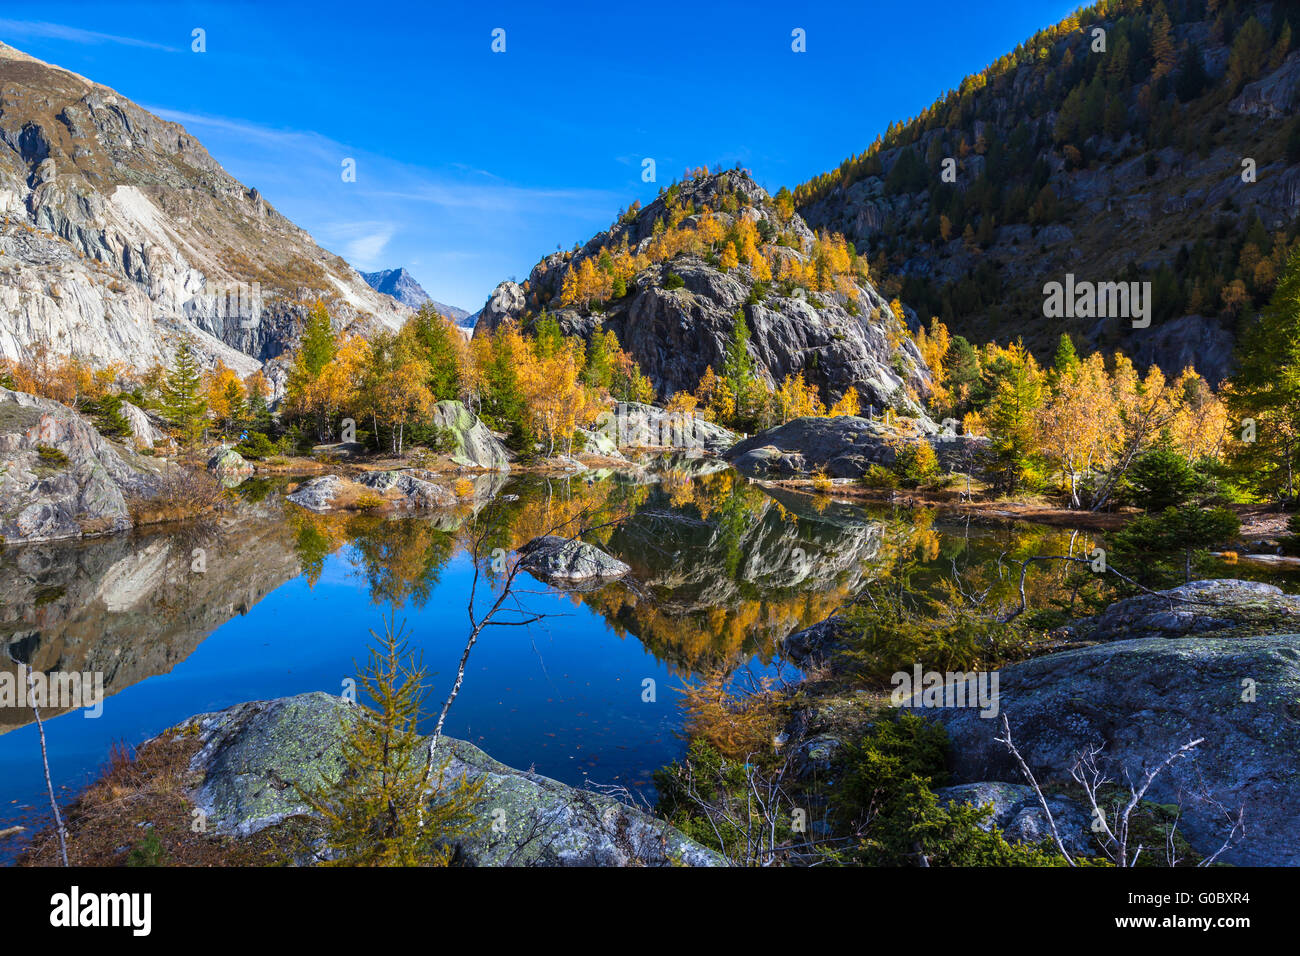 Belle vue sur le lac vert avec reflcection d'arbres colorés en automne doré, région d'Aletsch glacier des Alpes suisses, Canto Banque D'Images